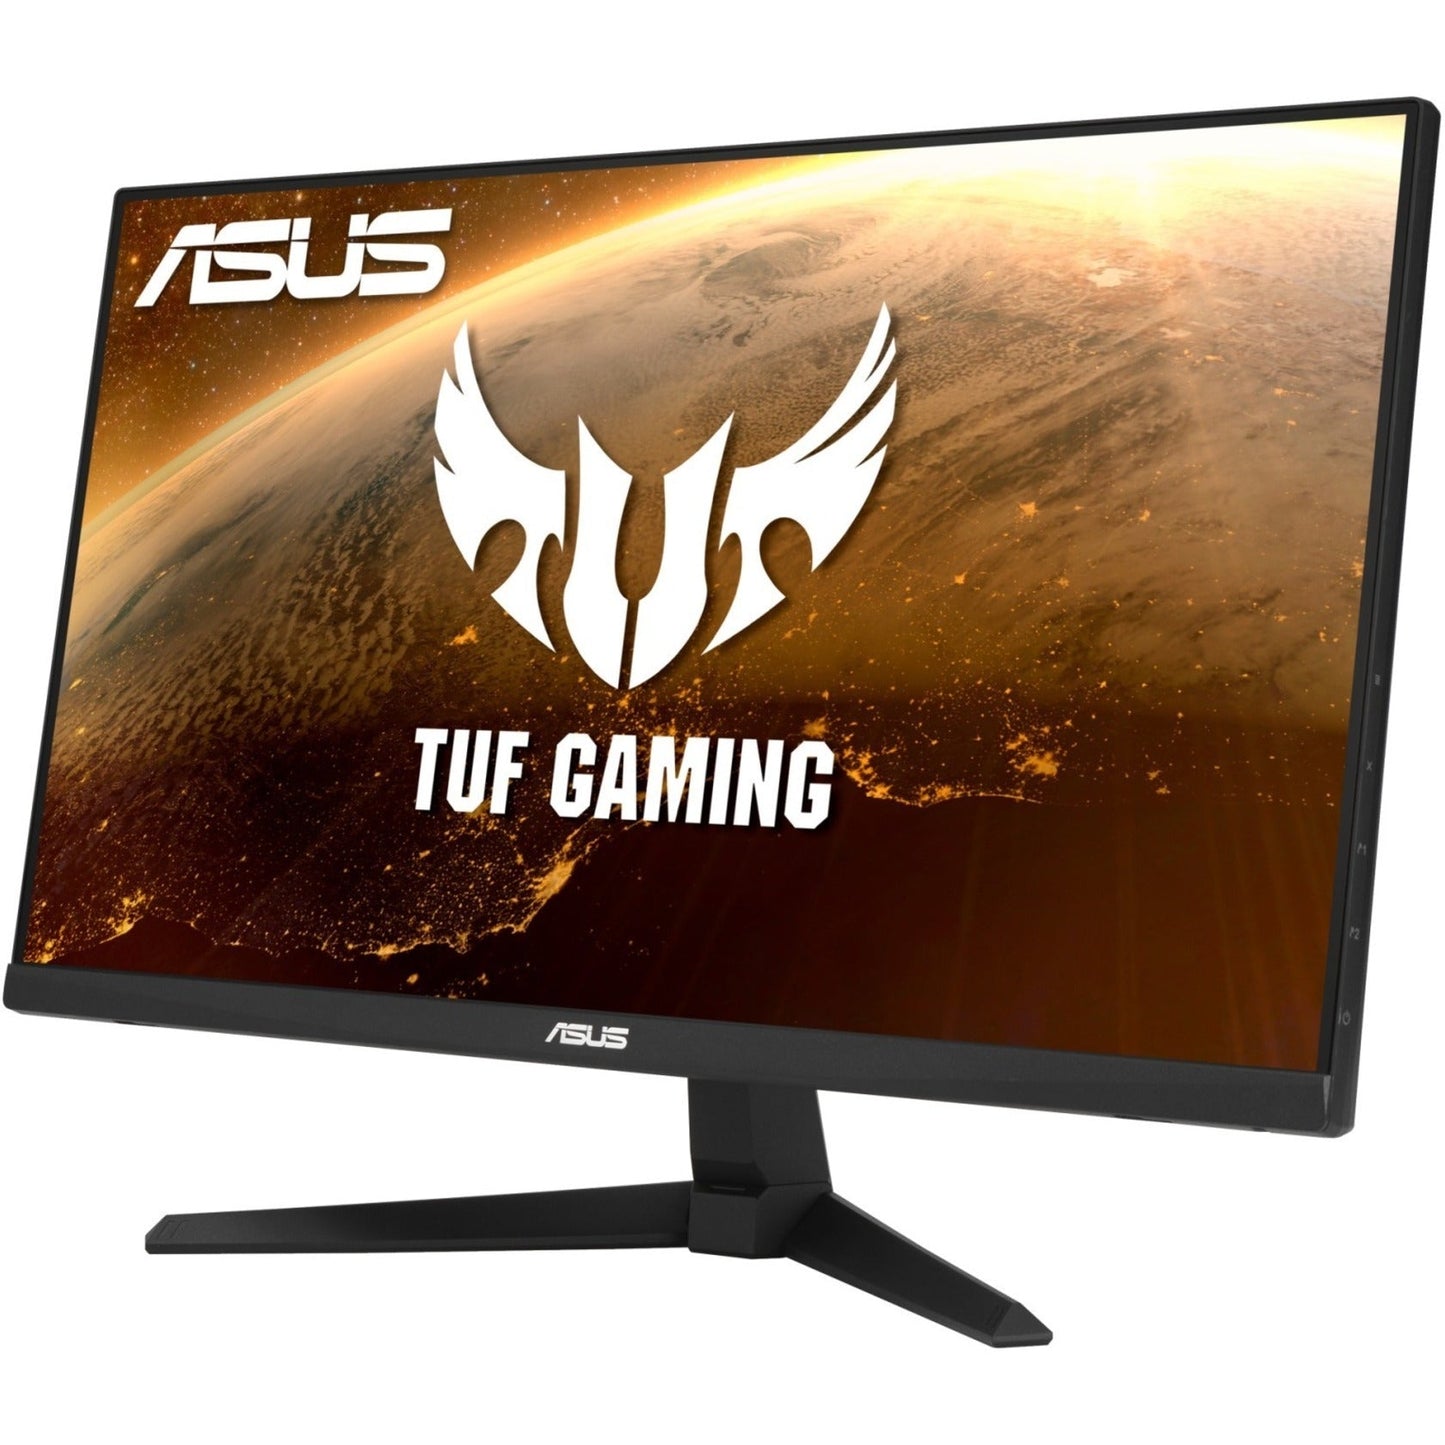 TUF VG247Q1A 23.8" Full HD Gaming LCD Monitor - 16:9 - Black